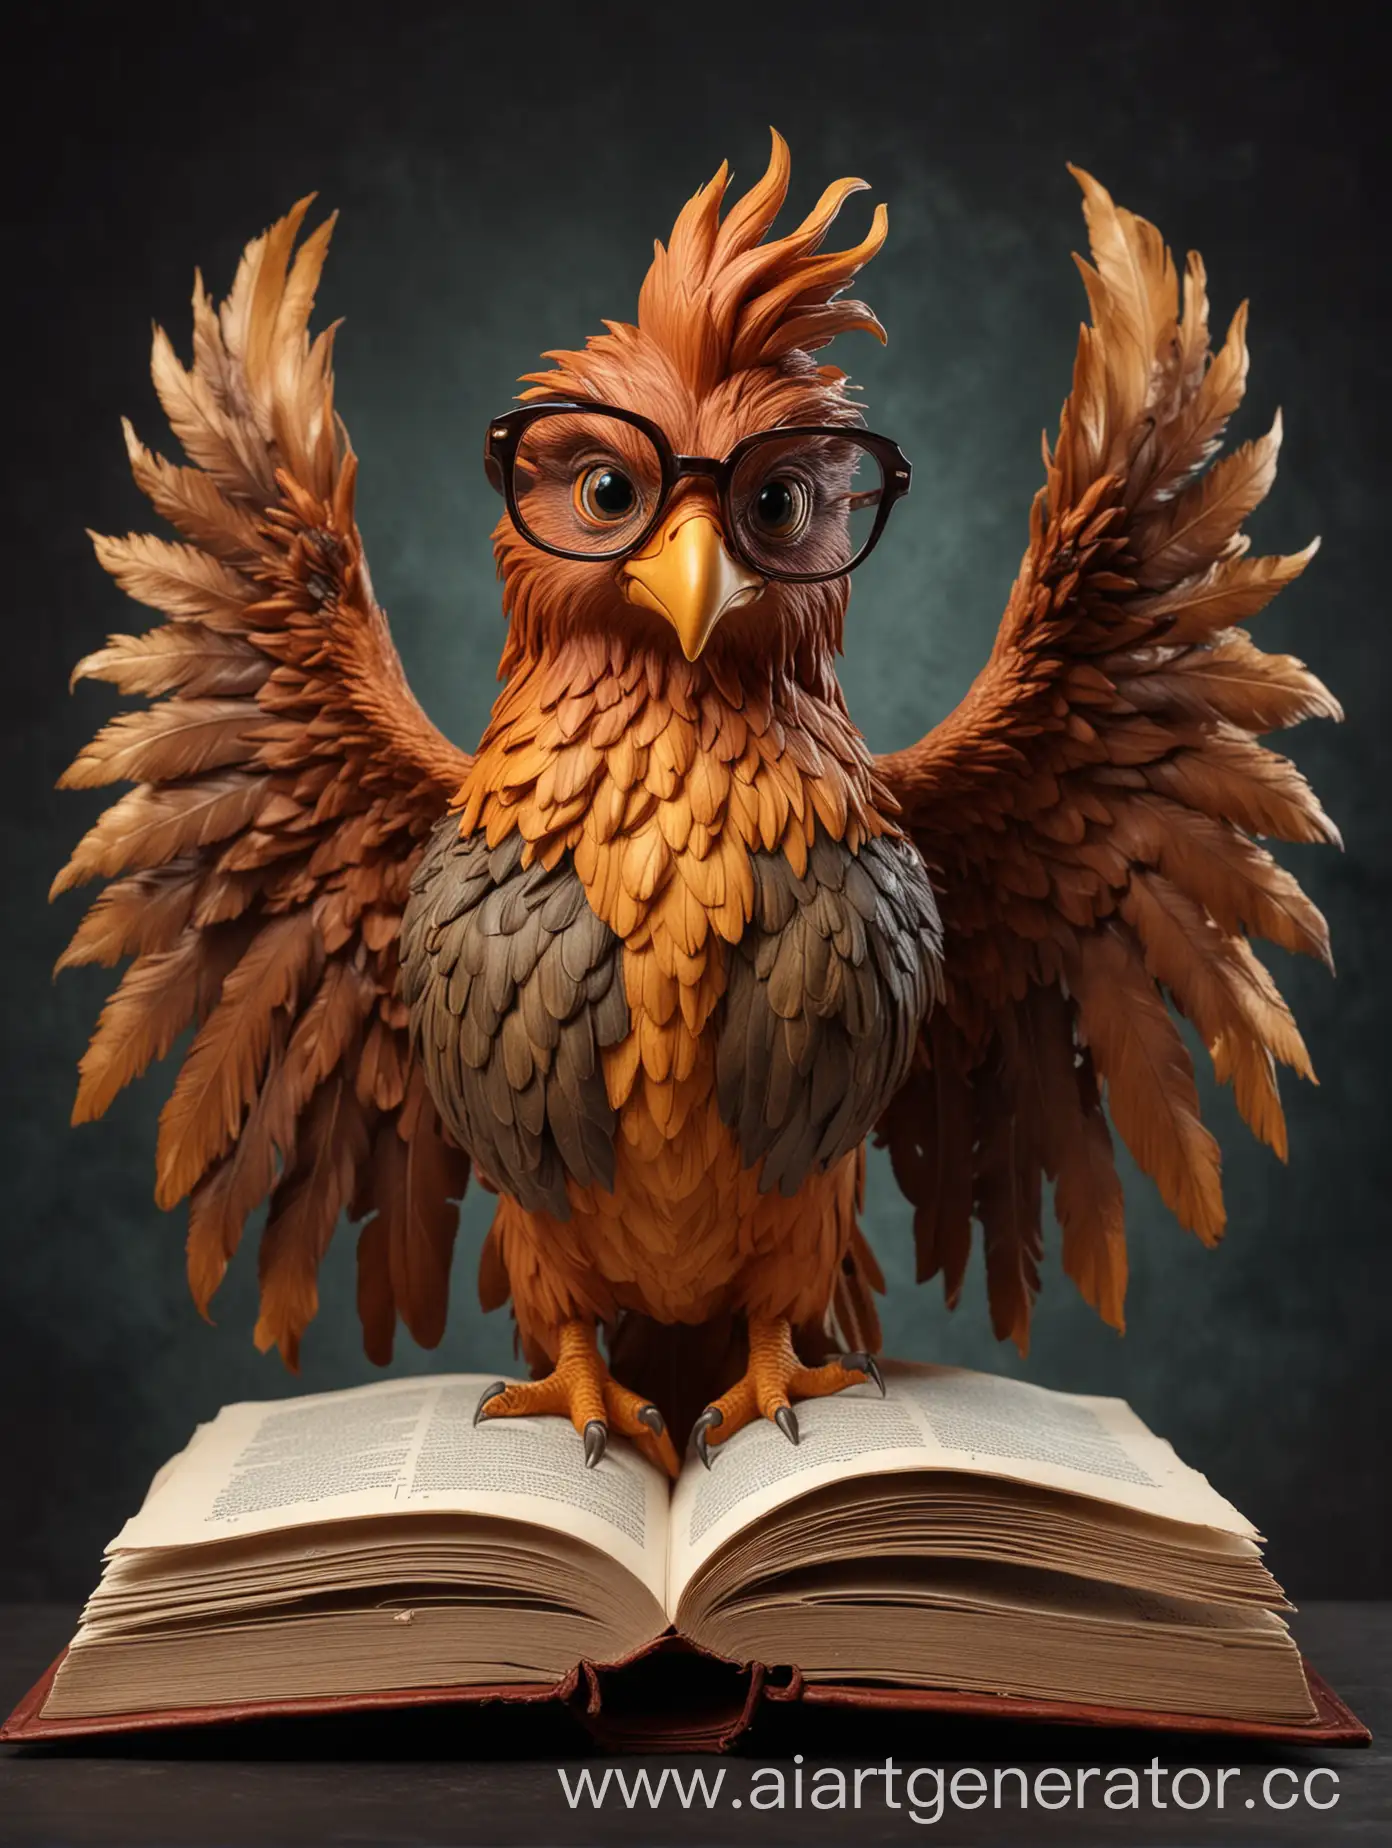 Phoenix-Wearing-Glasses-Reading-an-Open-Book